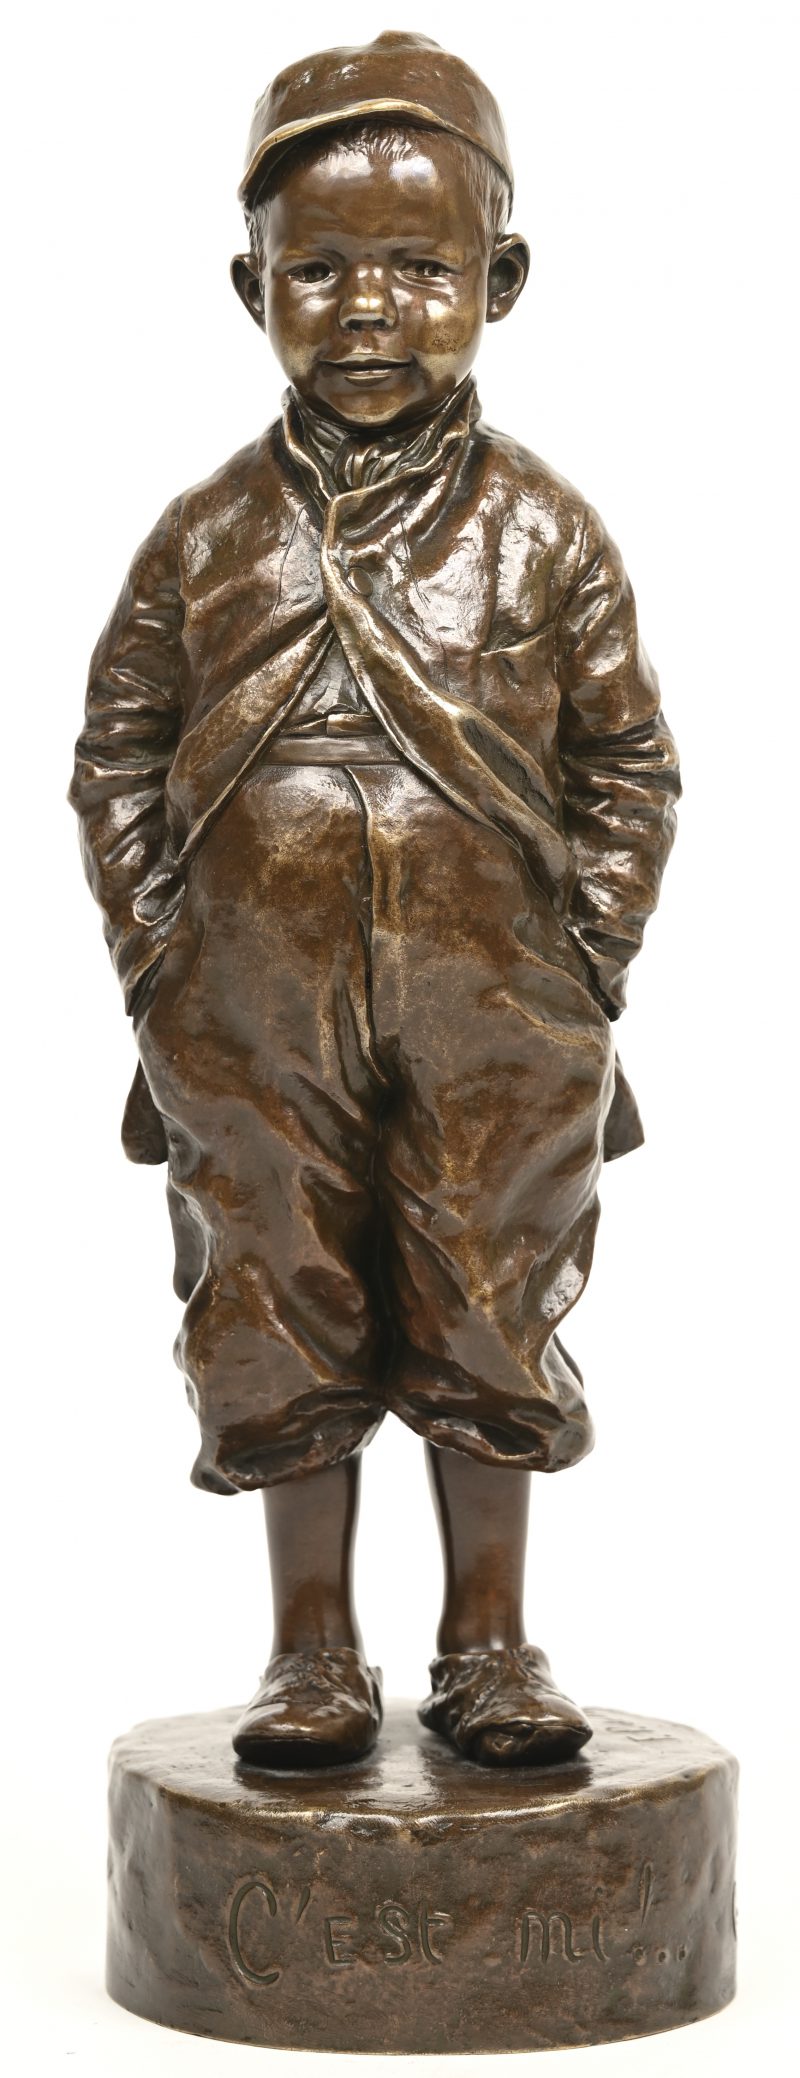 Een bronzen beeldje getiteld “C’est Mi !.. (Berck S/Mer), getekend F. P. de Tavera 85, 1890.